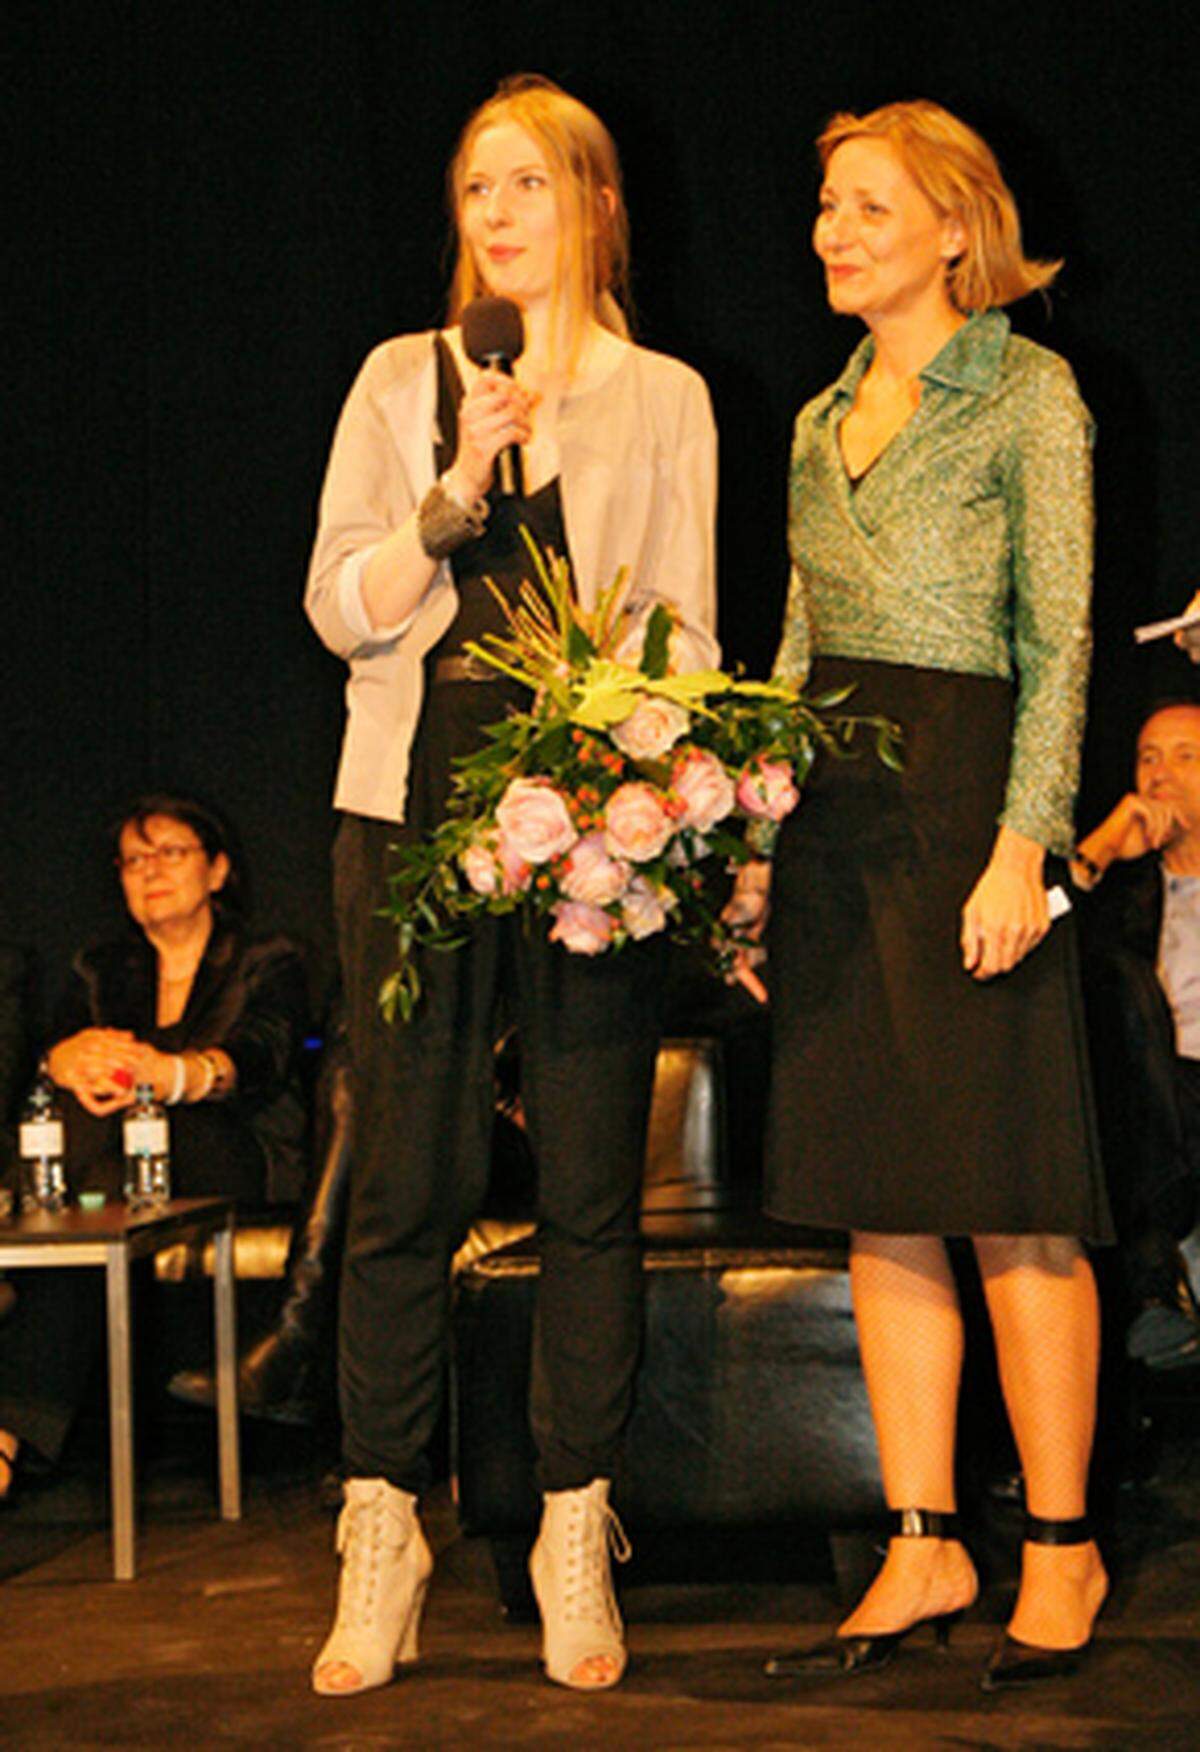 Im Rahmen der der Austria Fashion Awards - Show wurden außerdem eine Auszeichnung von der Privatwirtschaft vergeben: Der "KONTAKT.Fashion Award" stiftete Erste Bank für einen Modedesigner aus Zentral- und Osteuropa.